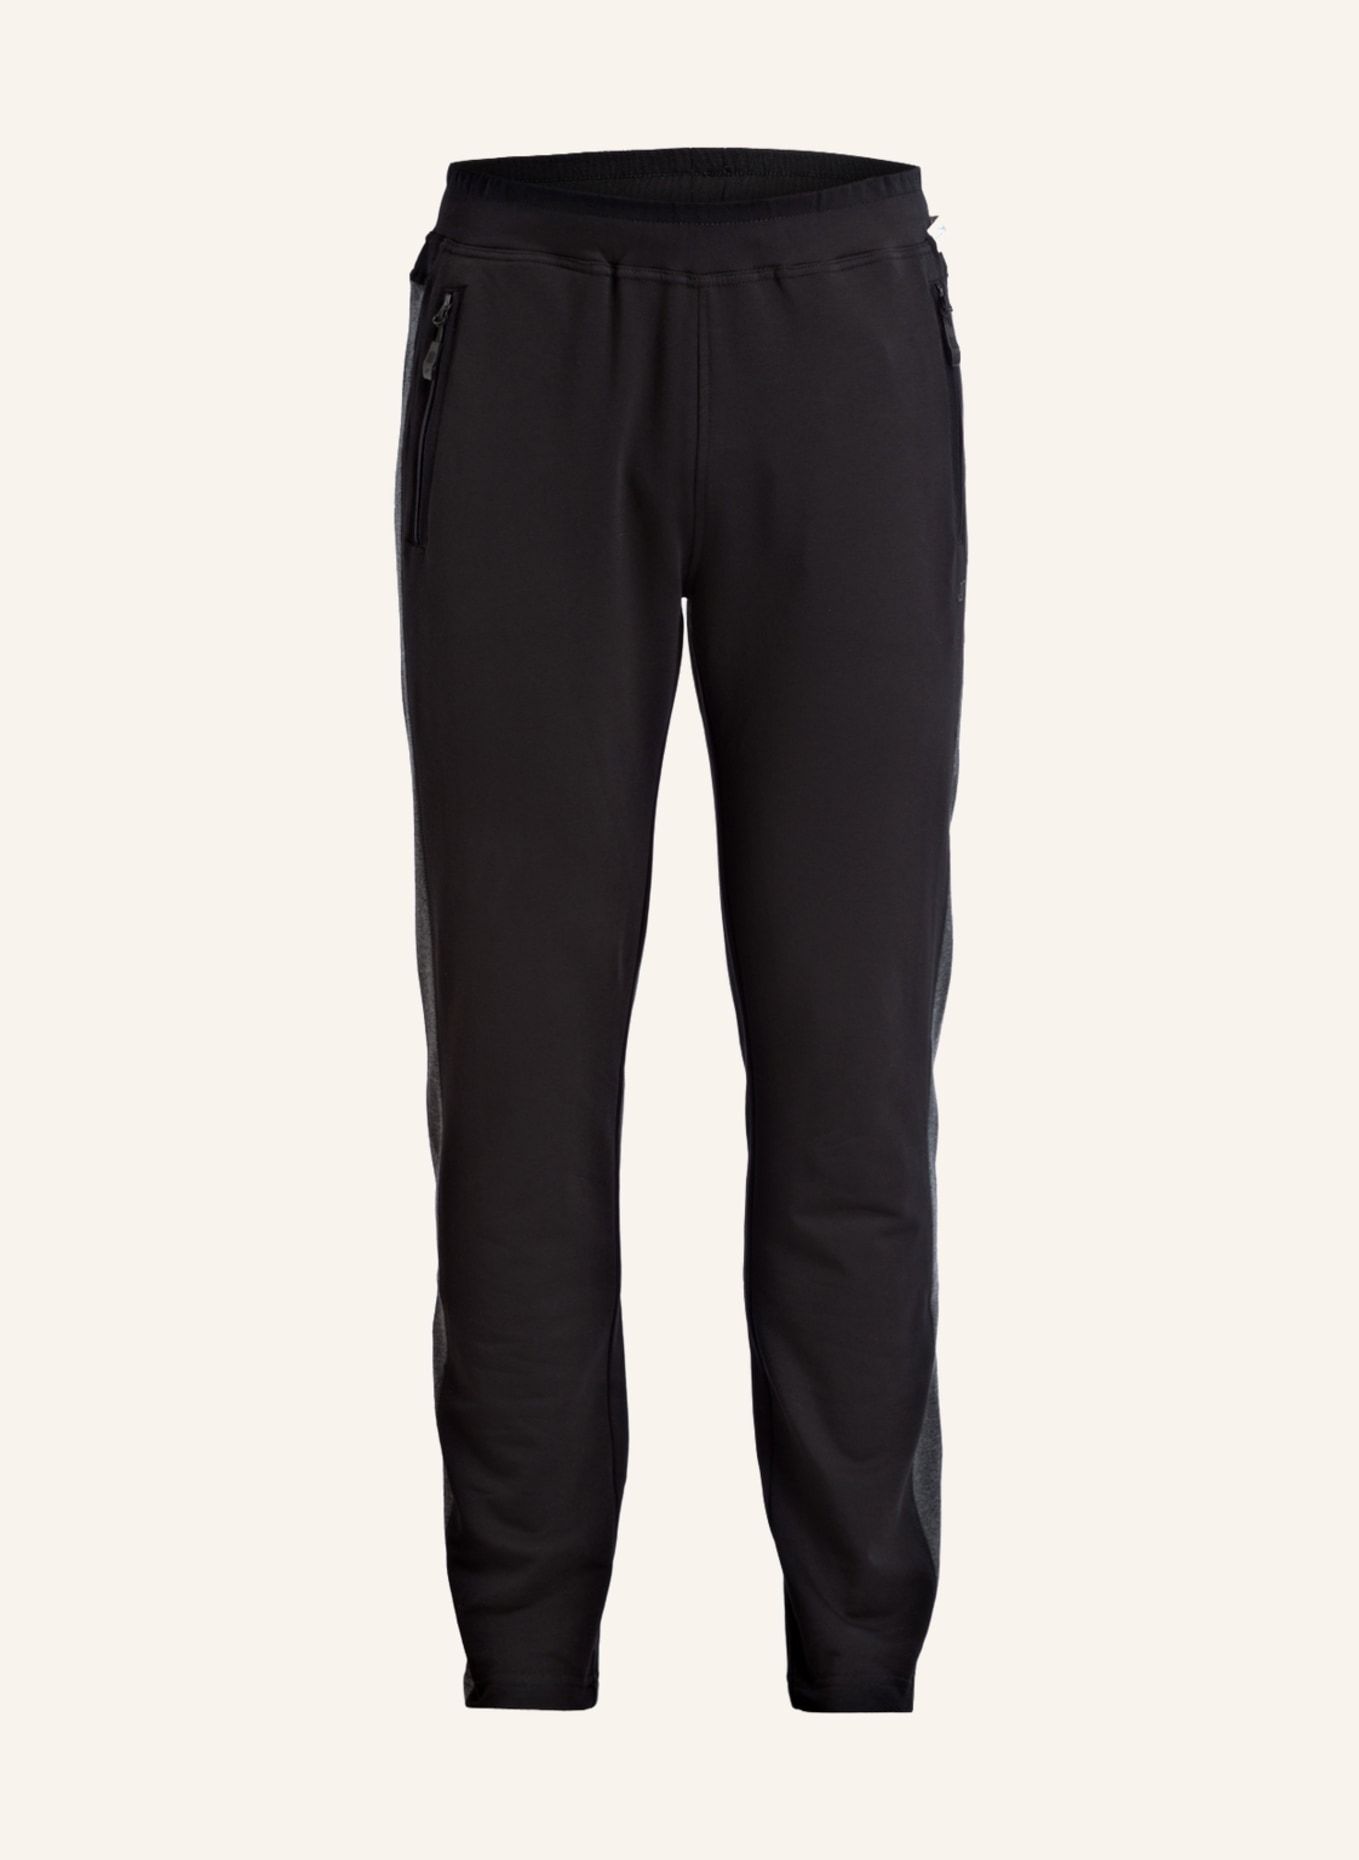 JOY sportswear Sweatpants FERNANDO, Color: BLACK (Image 1)